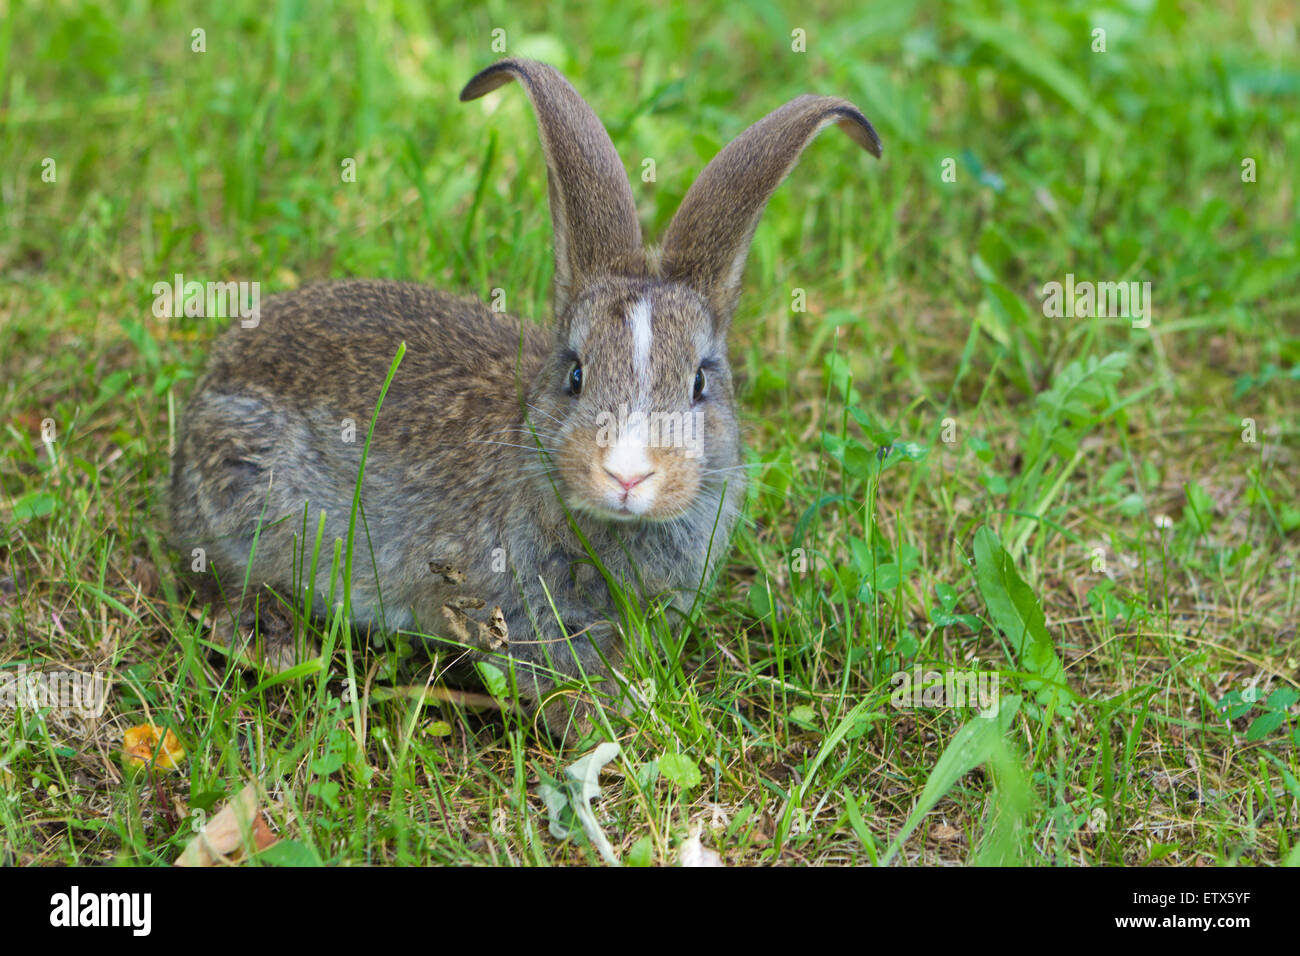 Carino piccolo coniglio sull'erba verde Foto Stock